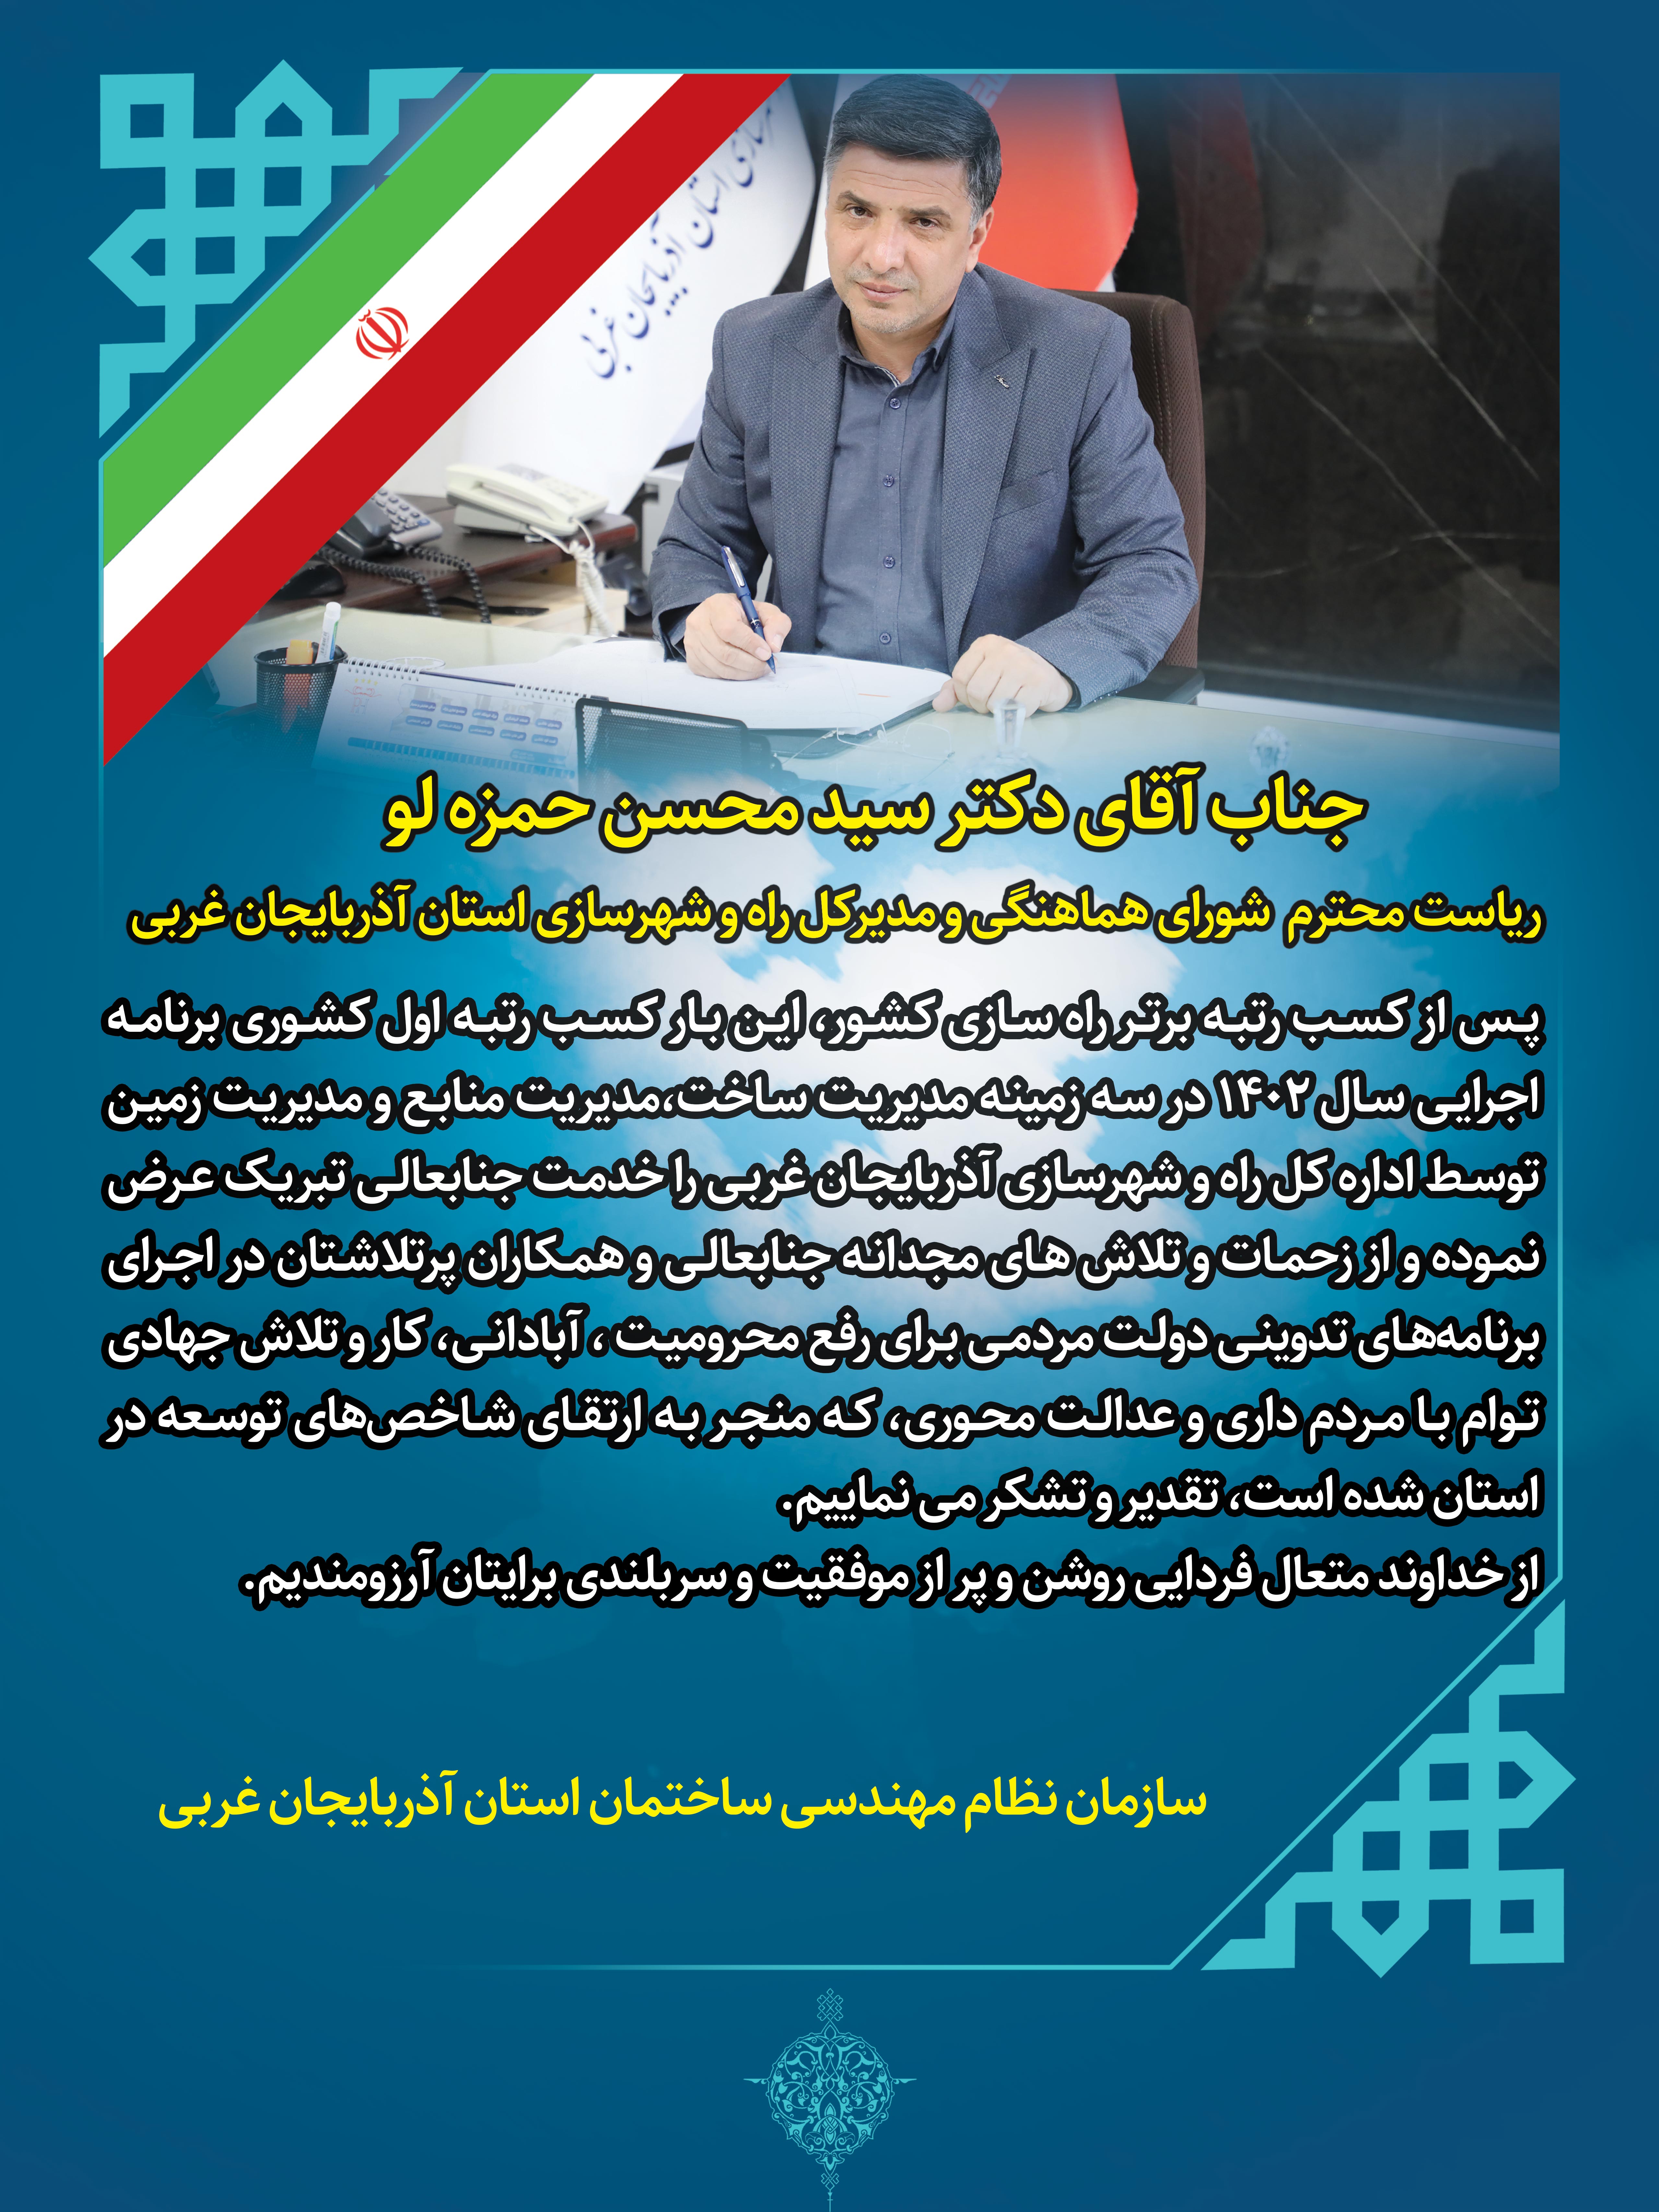 تبریک به دکتر حمزه لو مدیر کل محترم اداره راه و شهرسازی آذربایجان غربی